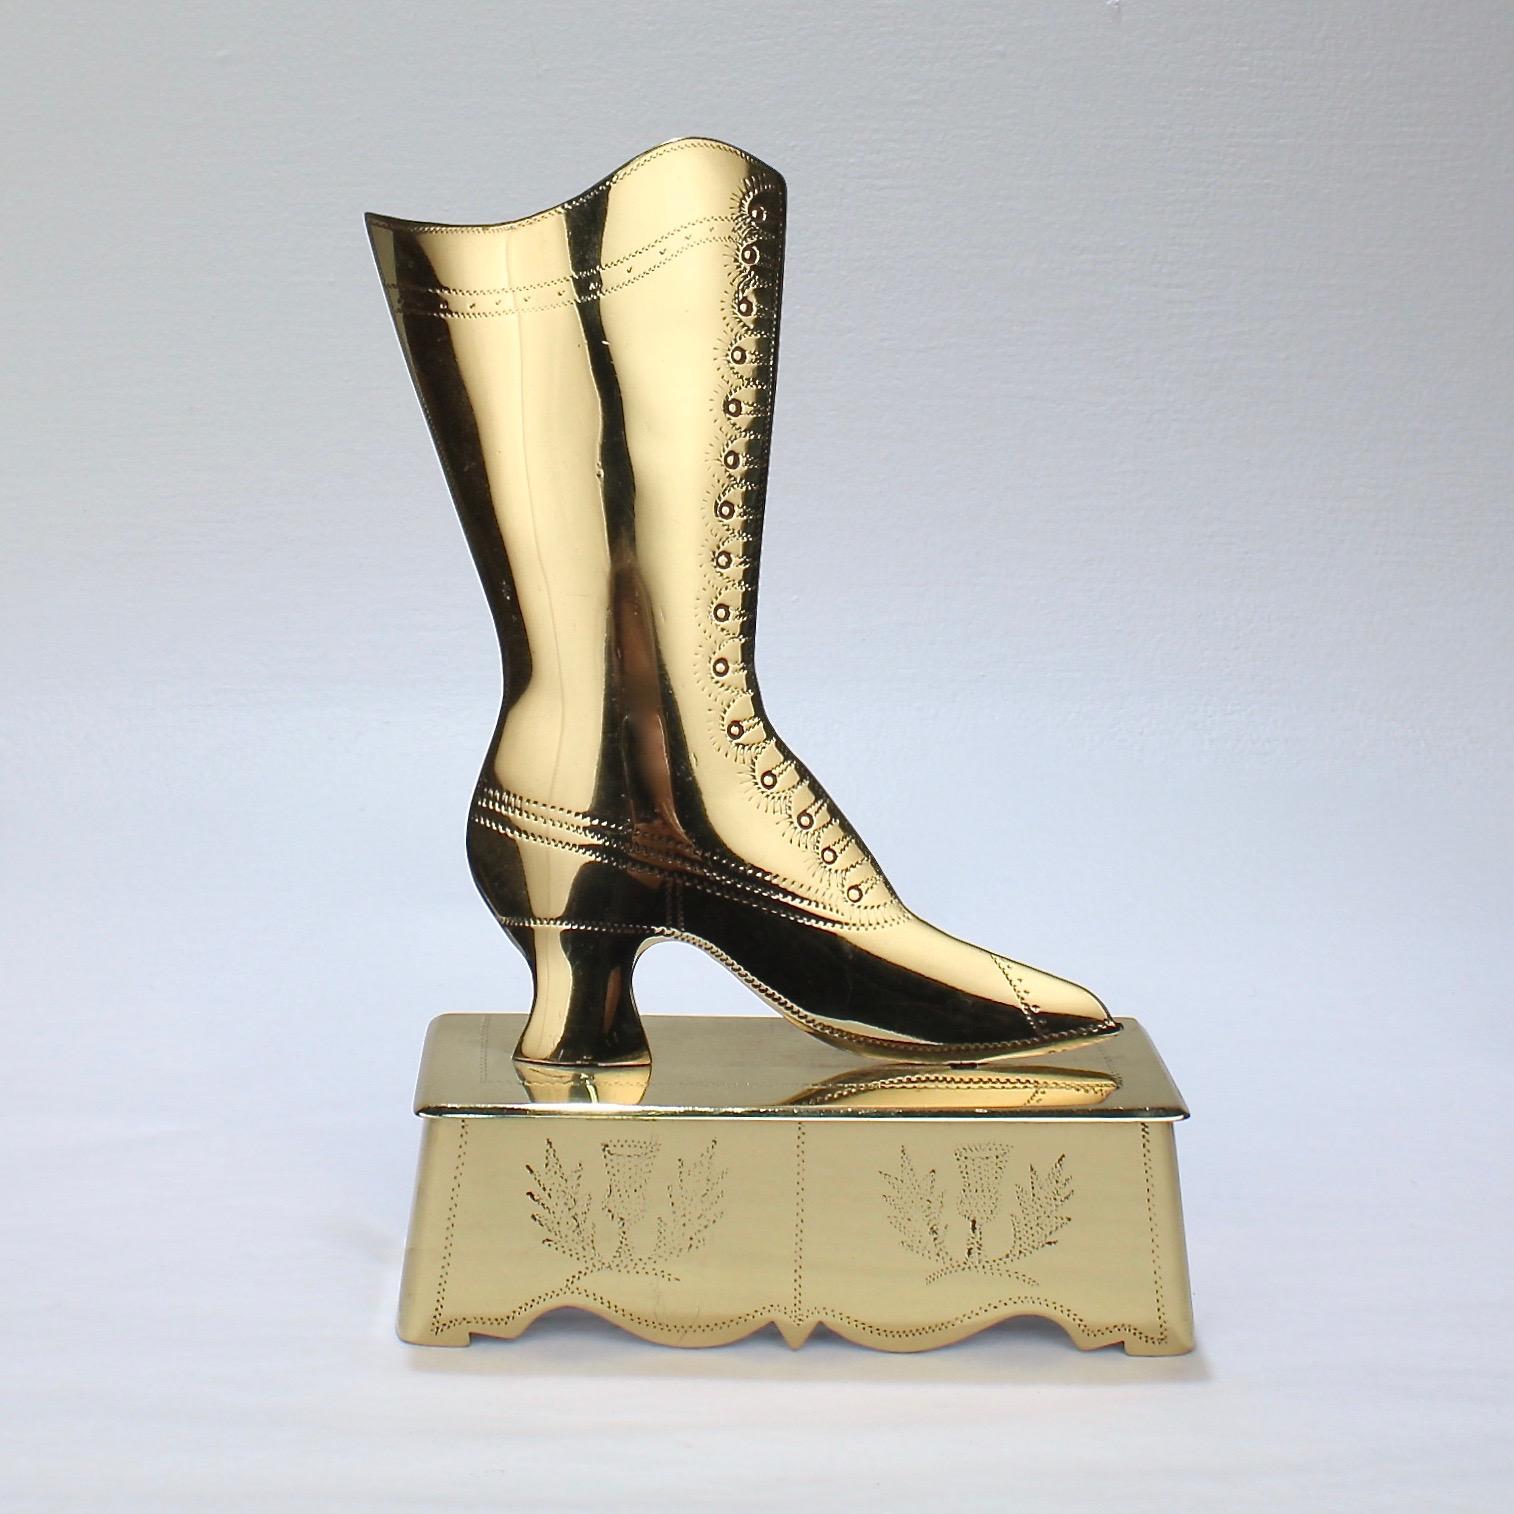 Laiton The Collective of 9 Folky English Victorian Shoe and Boot Mantel Ornaments (ornements de cheminée en laiton pour chaussures et bottes) en vente